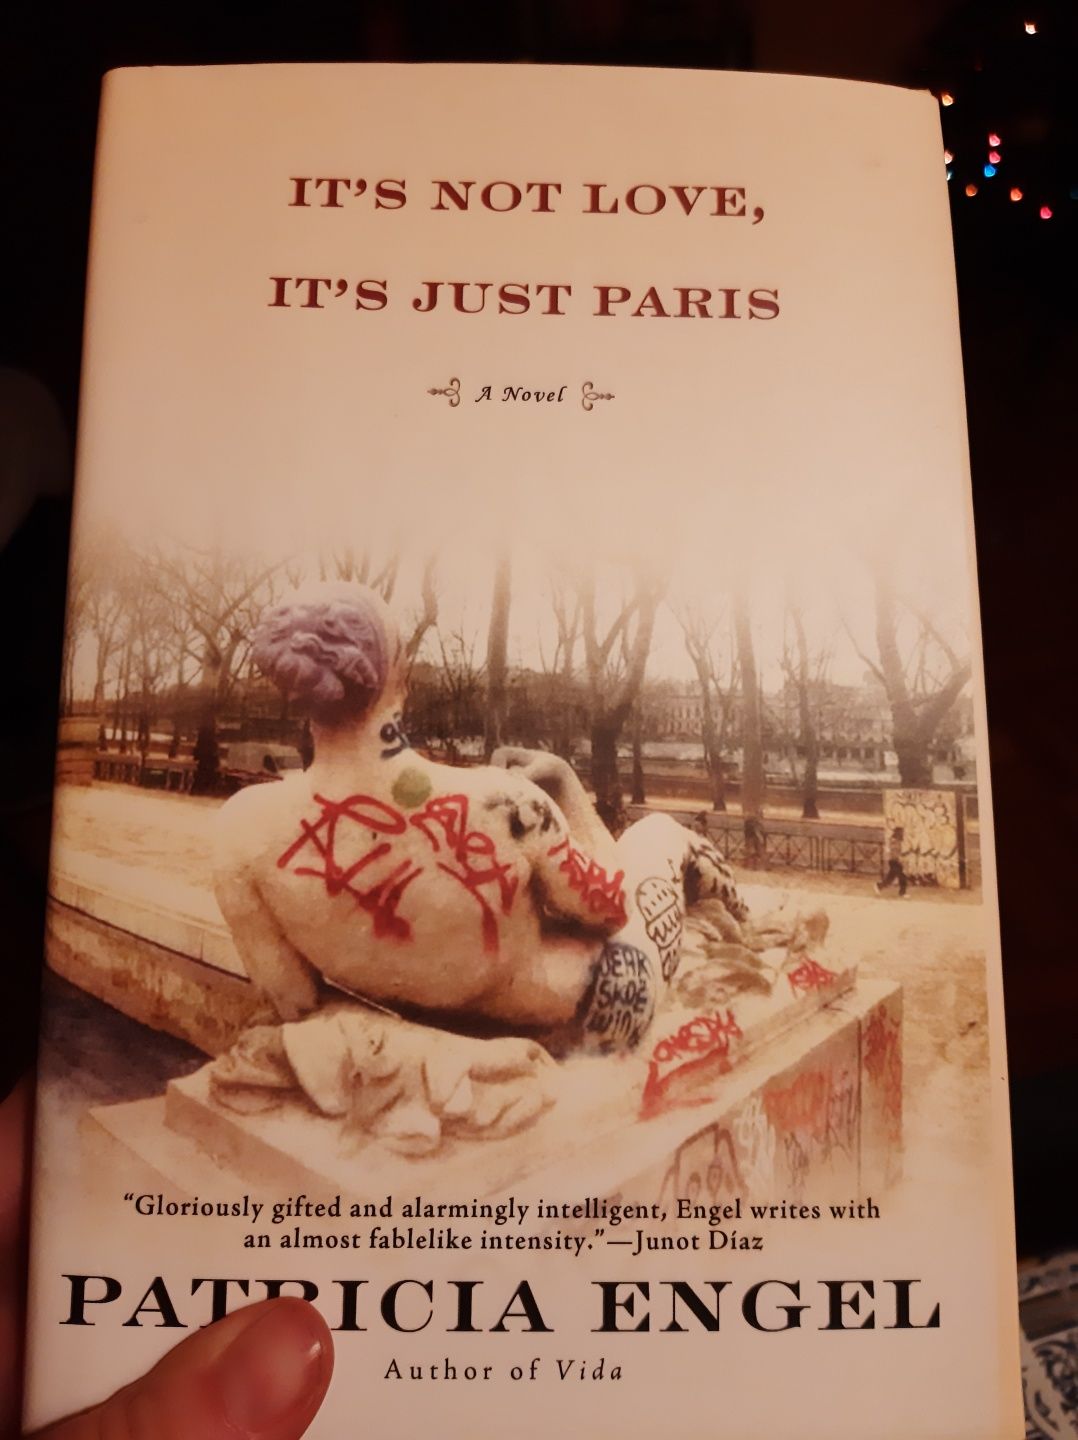 Vendo livro It's not love, it's just Paris, de Patricia Engel